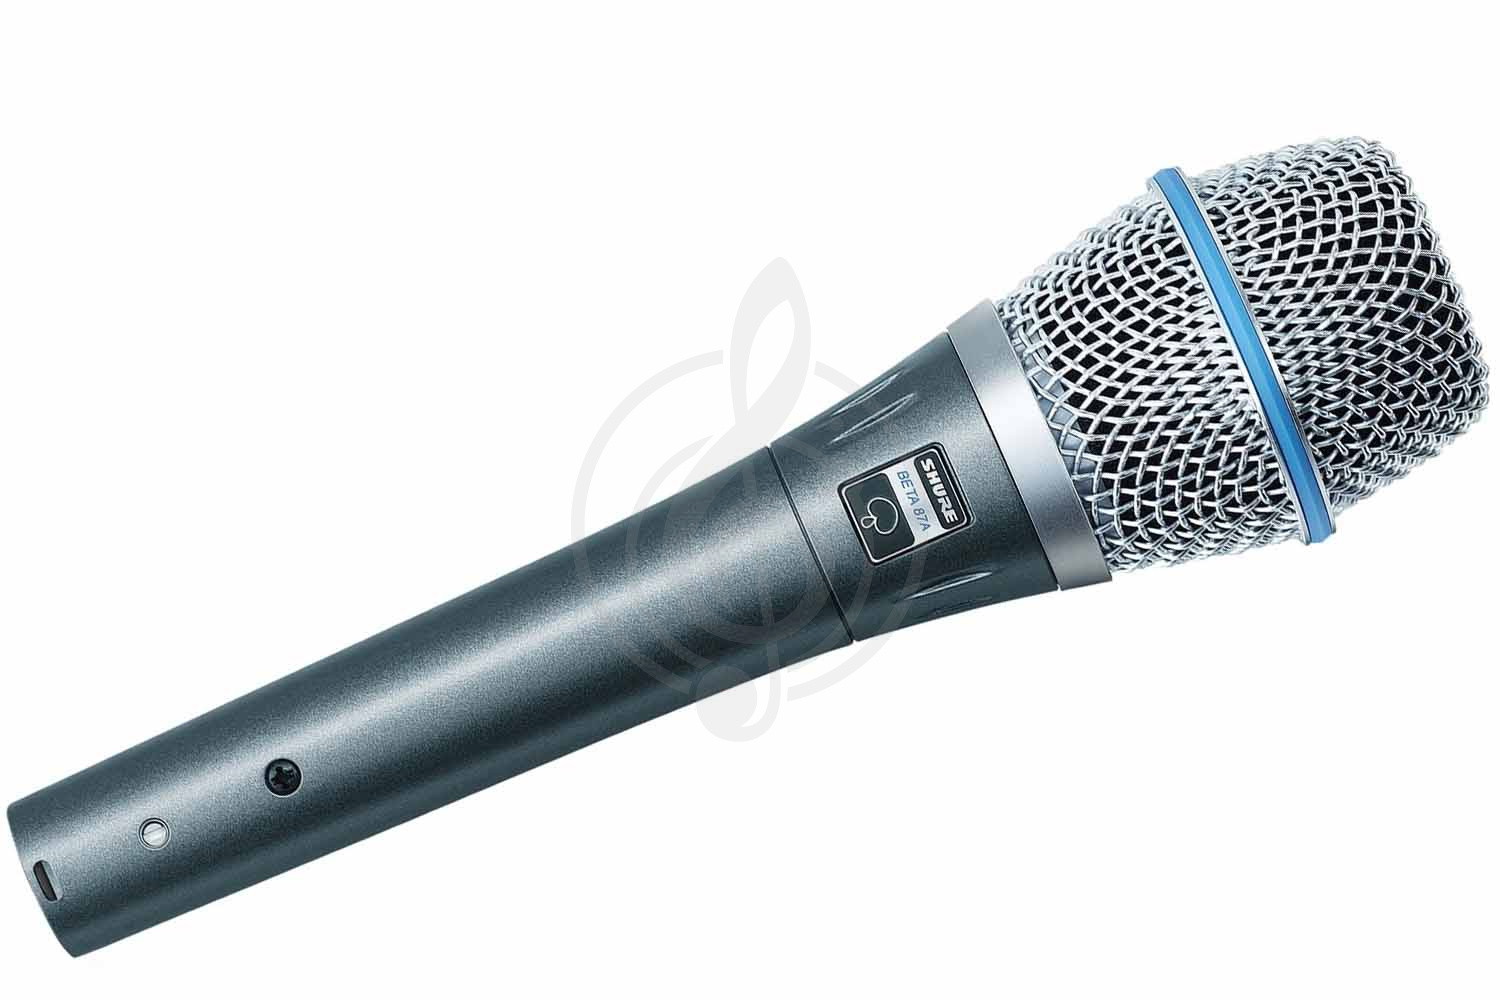 Конденсаторный студийный микрофон Конденсаторные студийные микрофоны Shure SHURE BETA 87C - конденсаторный студийный микрофон BETA 87C - фото 1